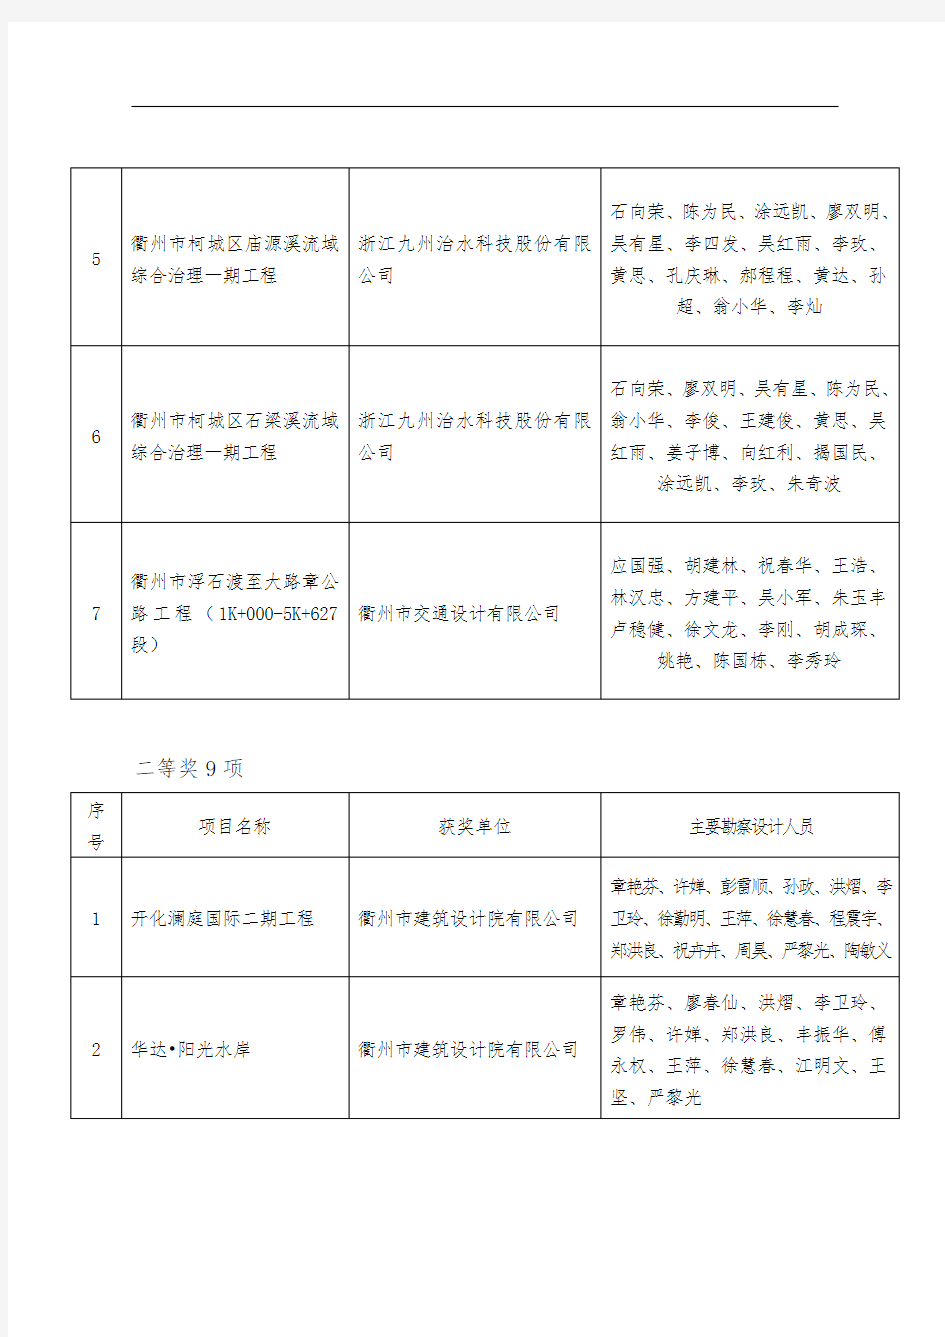 建设工程衢江杯奖(优秀勘察设计)公示名单